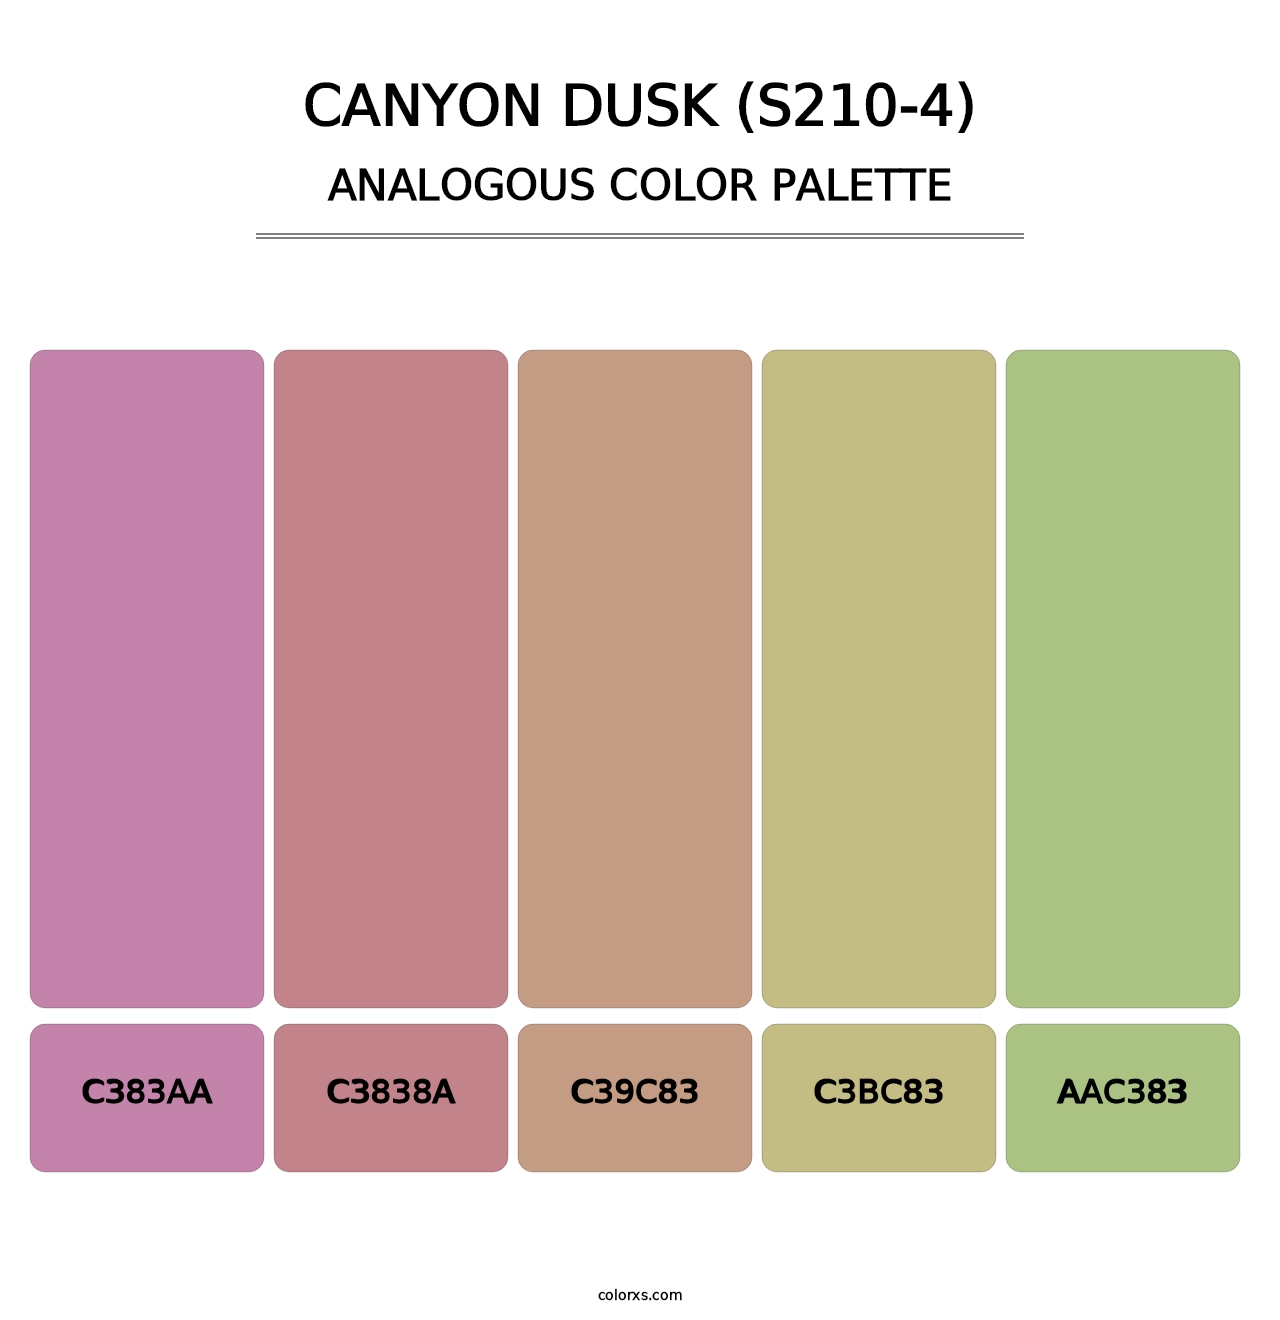 Canyon Dusk (S210-4) - Analogous Color Palette